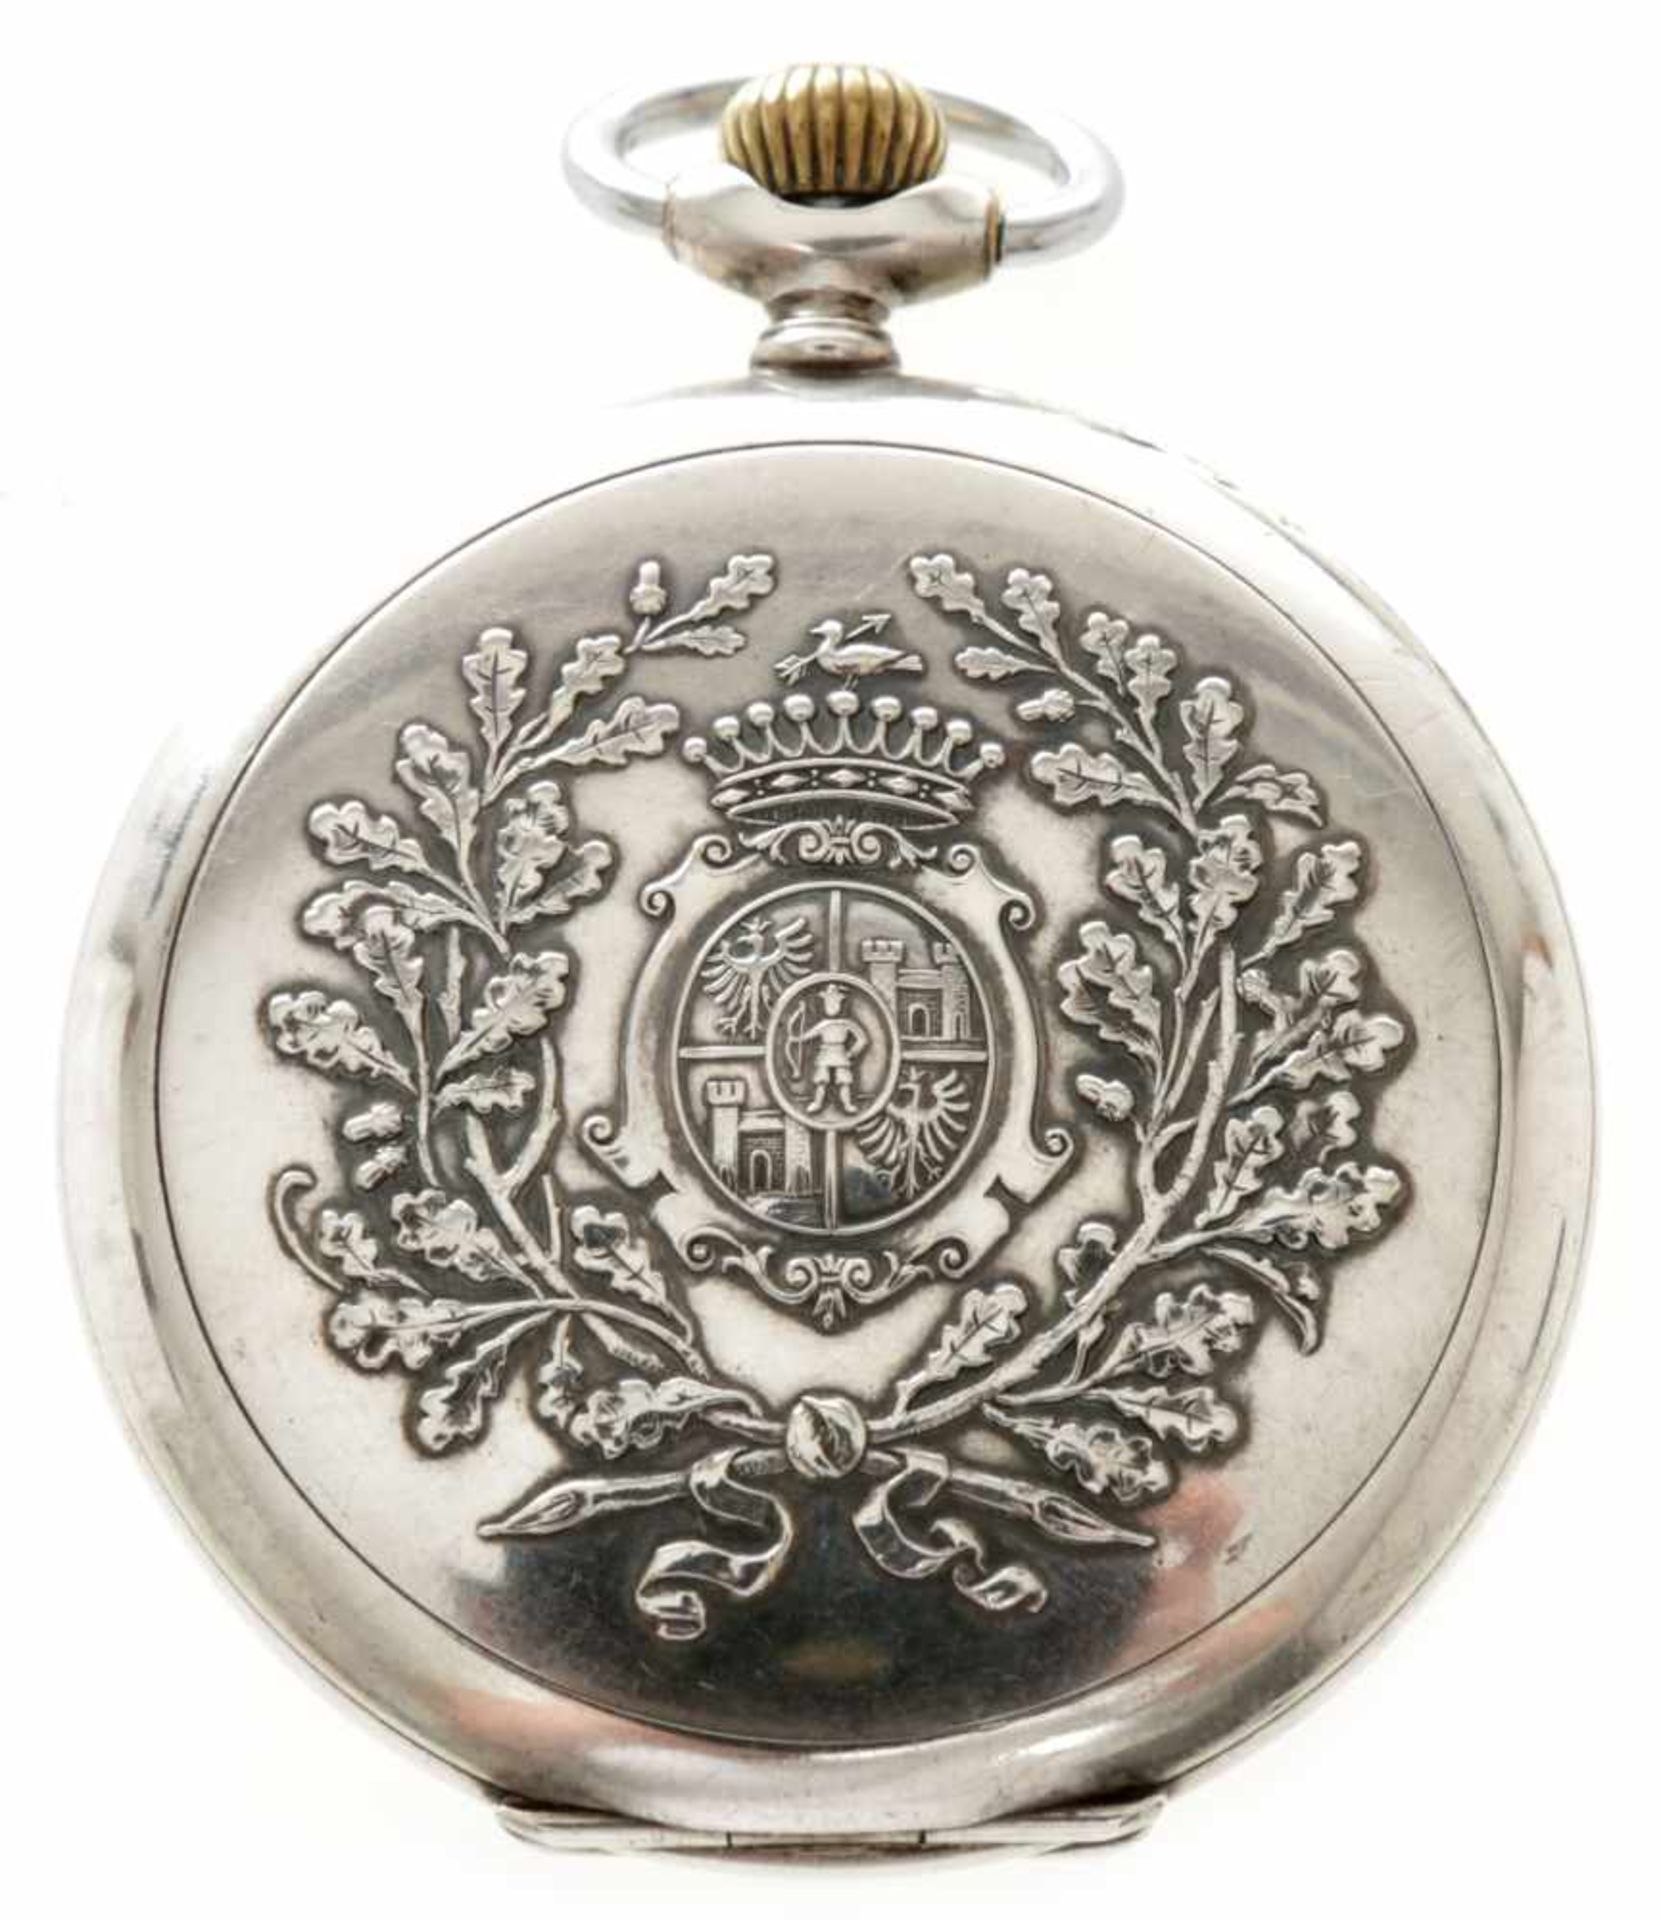 Herrentaschenuhr900er Silber, Junghans, um 1900 Weißes Zifferbl. m. arab. Ziffern, kl. Sekunde u. - Bild 2 aus 2